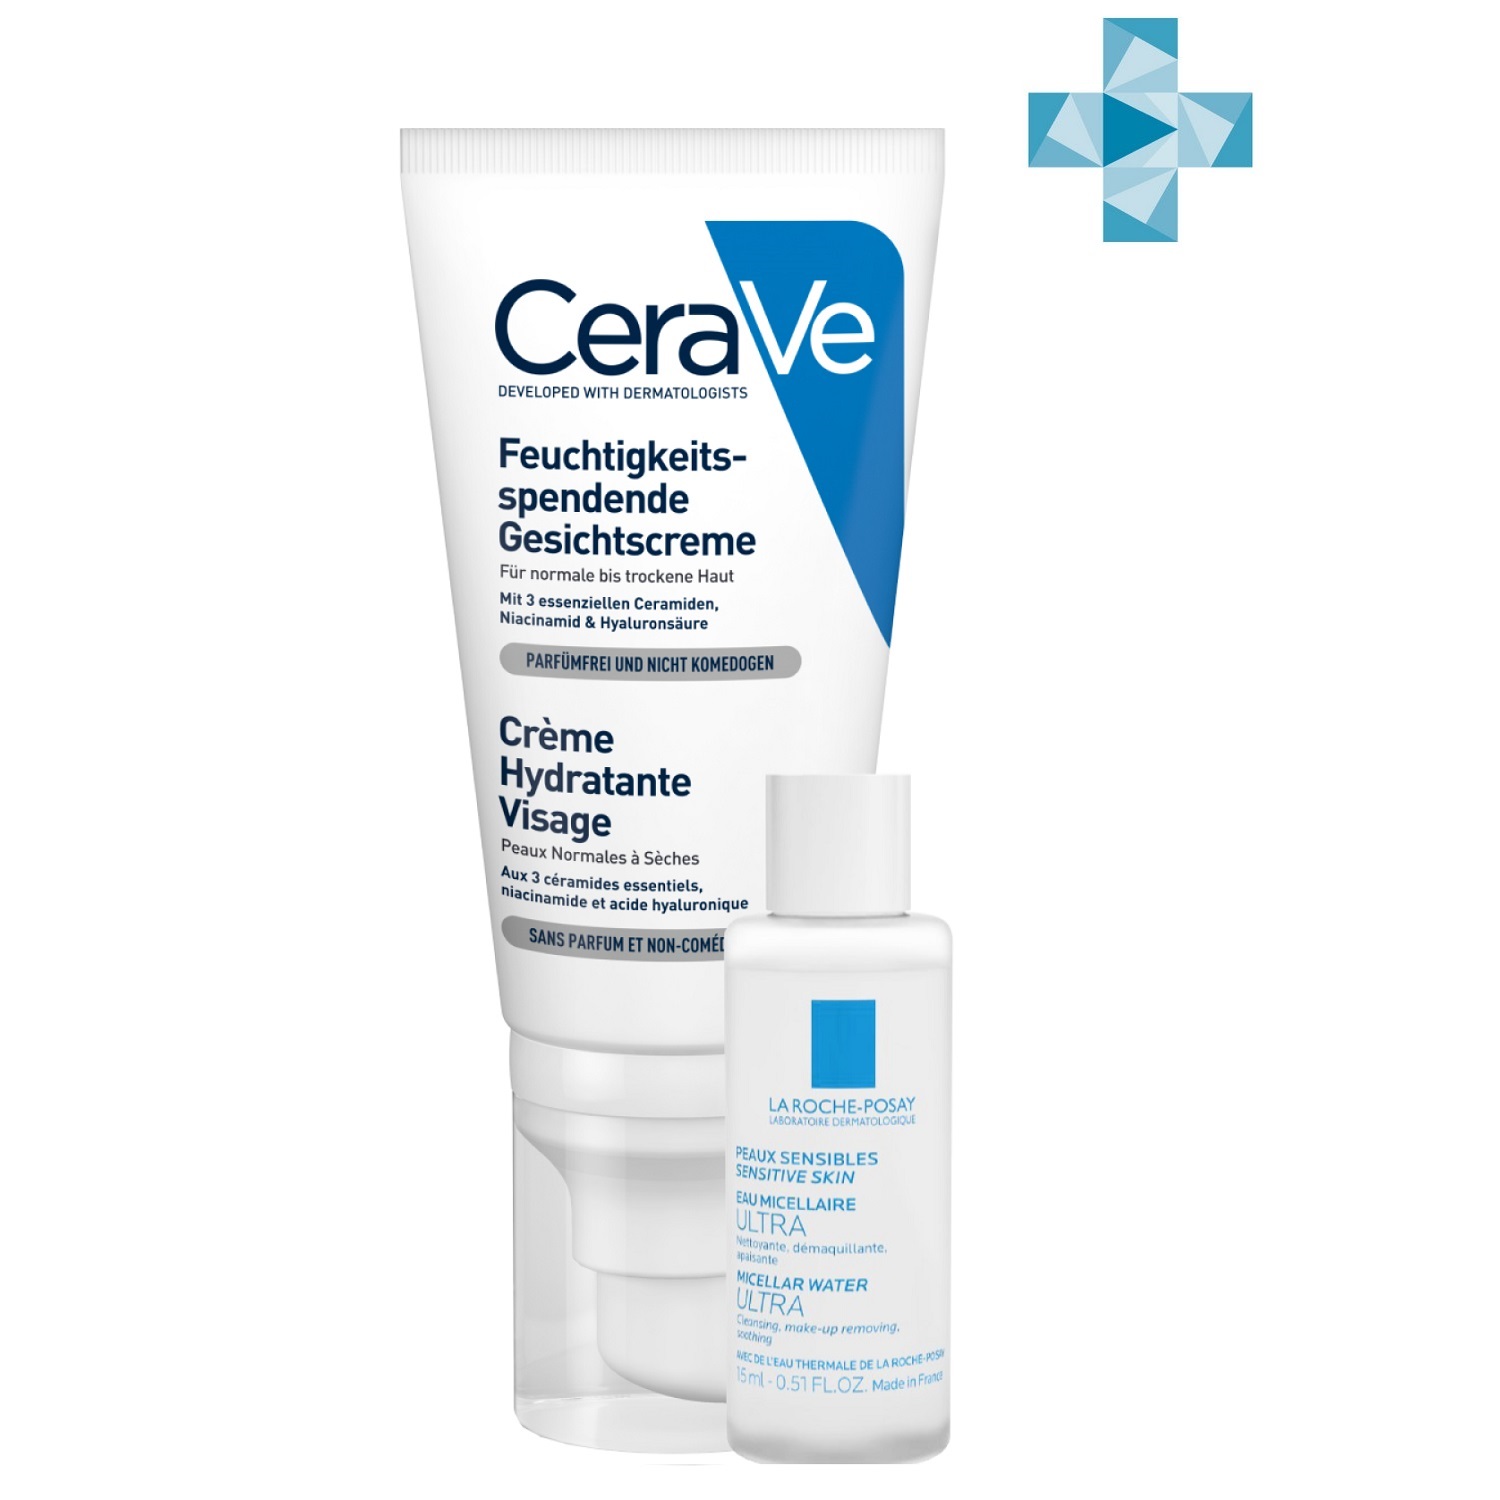 

CeraVe Набор: Увлажняющий лосьон CeraVe для нормальной и сухой кожи лица, 52 мл + Мицеллярная вода La Roche-Posay Ultra для чувствительной кожи, 15 мл (CeraVe, Увлажнение кожи), Увлажнение кожи